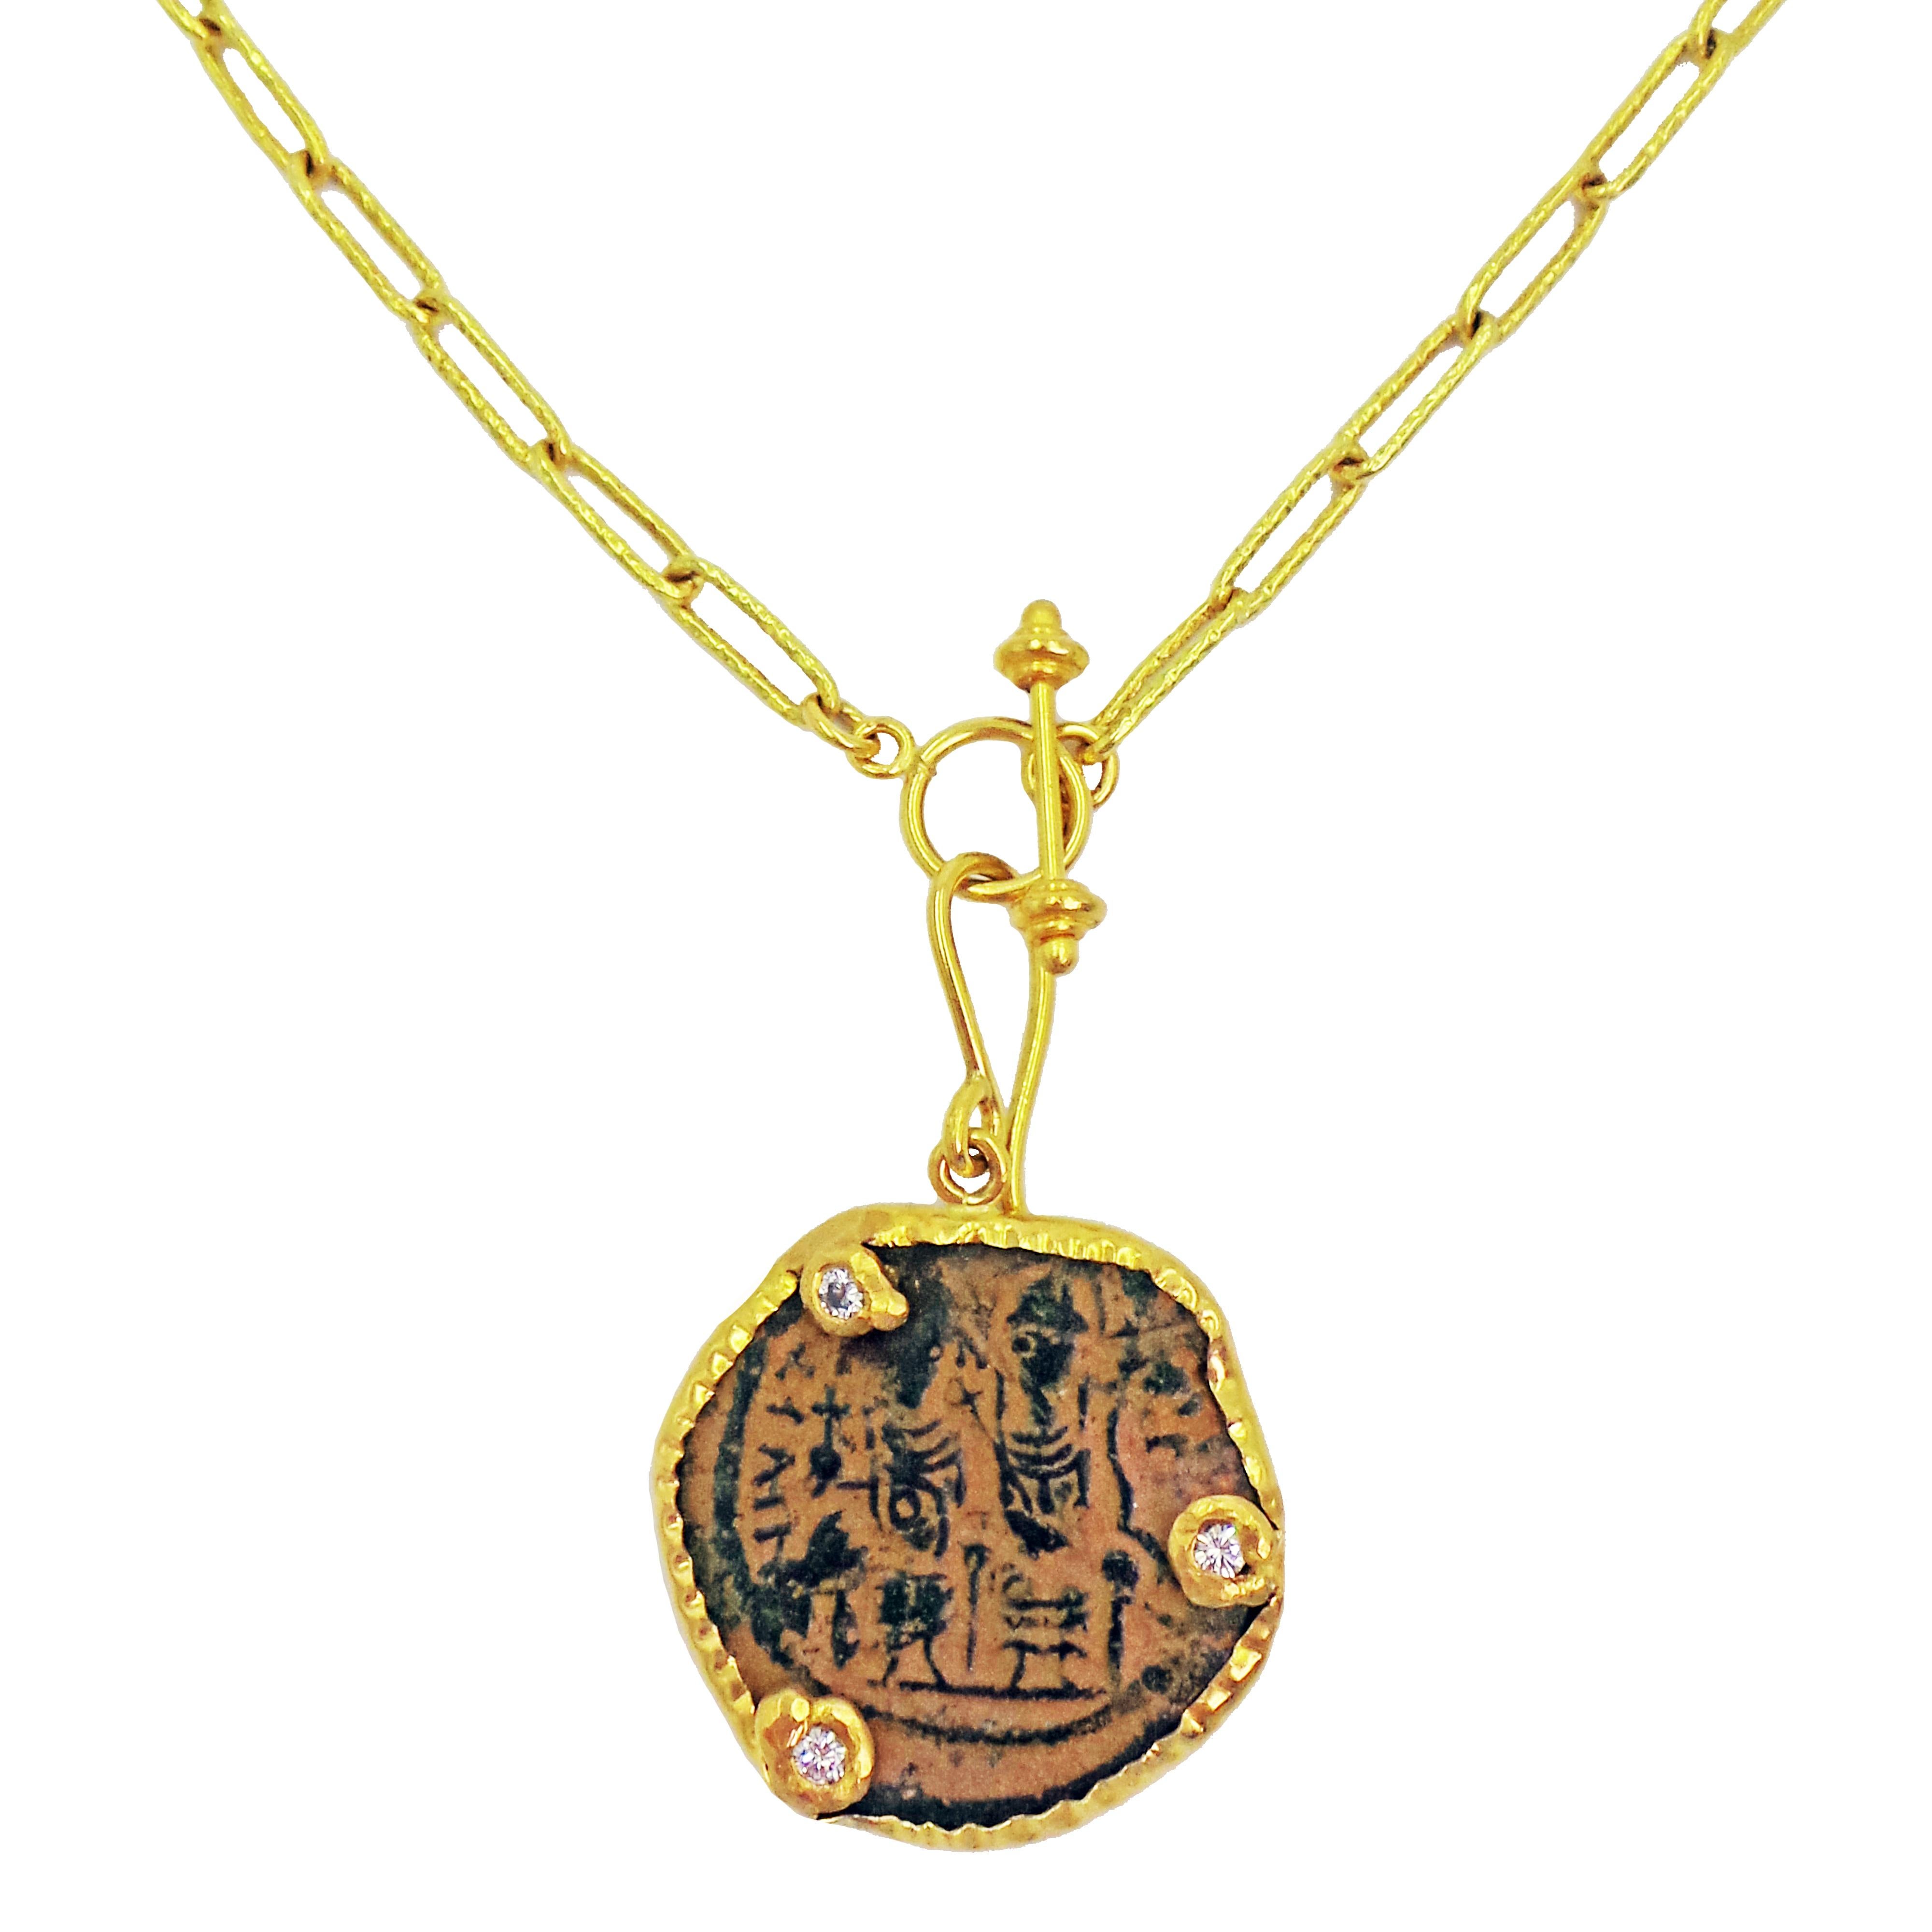 Authentique pièce de bronze byzantine ancienne (Justin II et la reine Sophia, 565 après J.-C.) et 3 diamants (poids total 0,30 carat, pureté SI1-SI2, couleur G-H) sertis dans un pendentif en or jaune 22k avec boucle à crochet. Le pendentif est monté